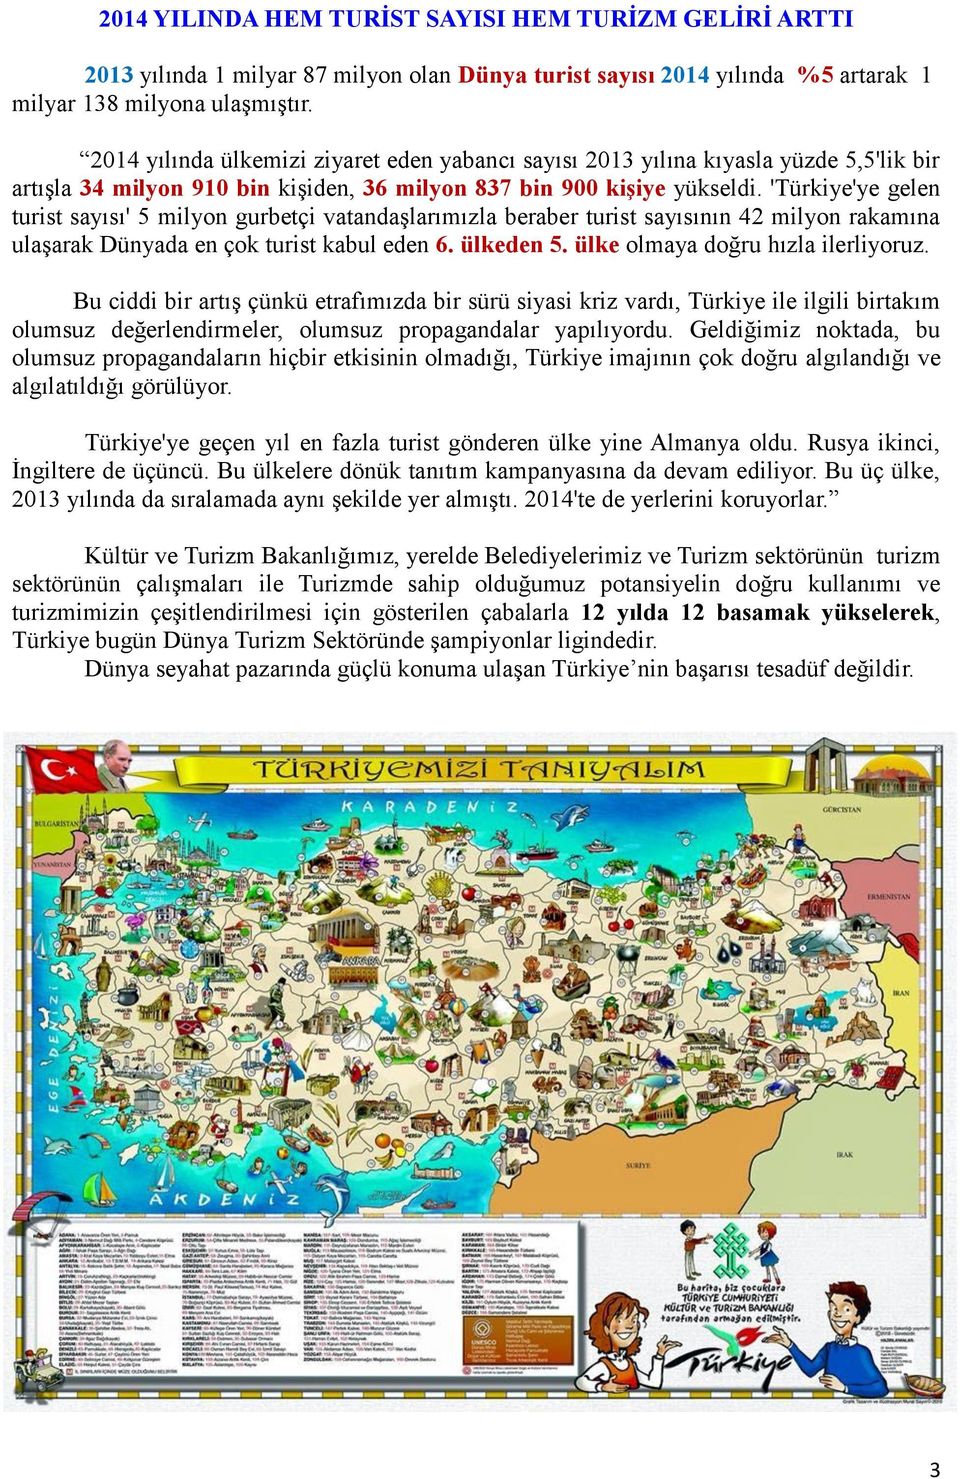 'Türkiye'ye gelen turist sayısı' 5 milyon gurbetçi vatandaşlarımızla beraber turist sayısının 42 milyon rakamına ulaşarak Dünyada en çok turist kabul eden 6. ülkeden 5.